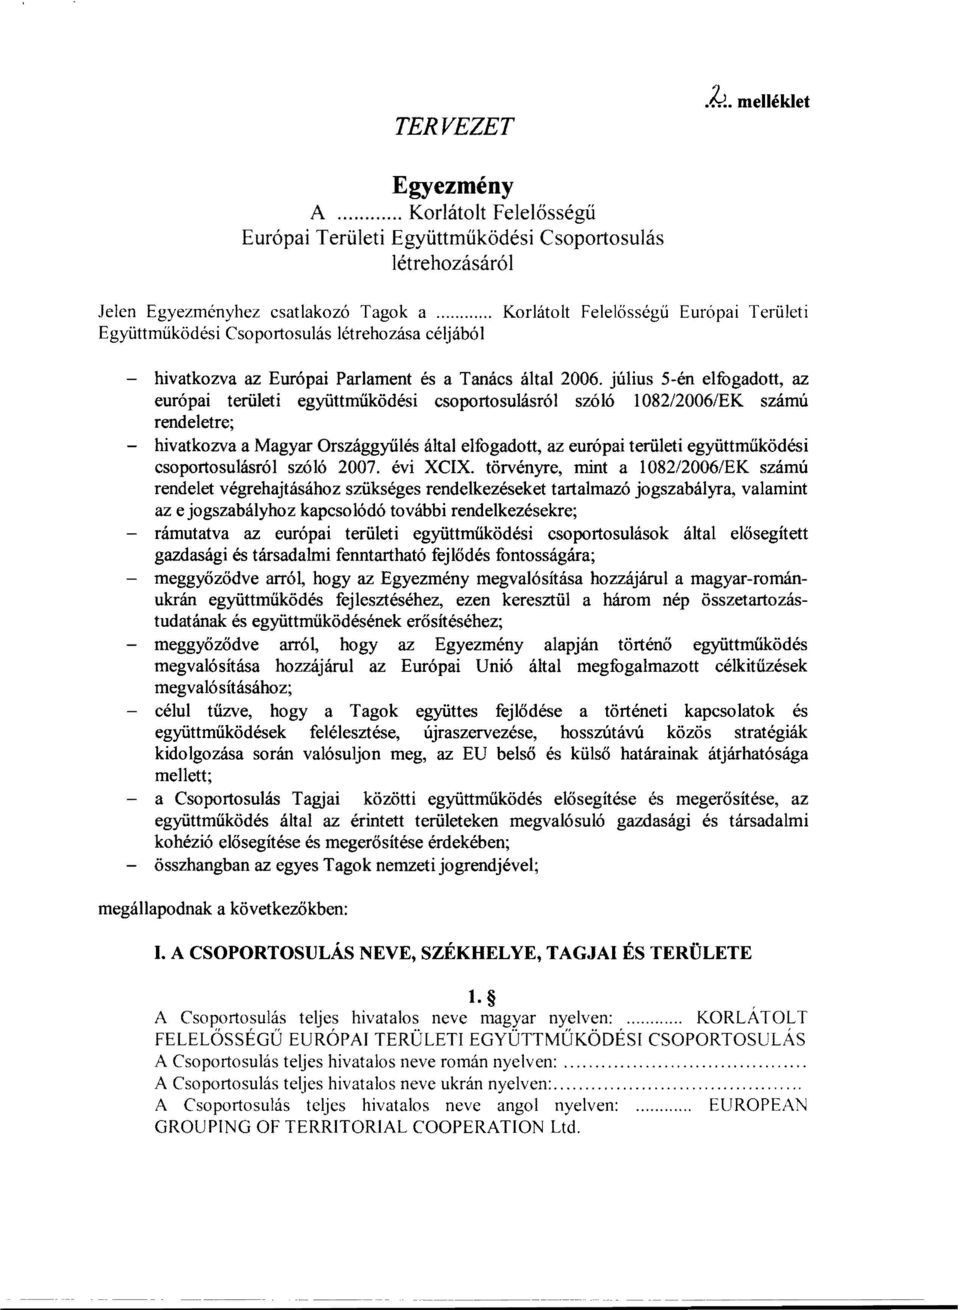 július 5-én elfogadott, az európai területi együttműködési csoportosulásról szóló 1082/2006/EK számú rendeletre; - hivatkozva a Magyar Országgyűlés által elfogadott, az európai területi